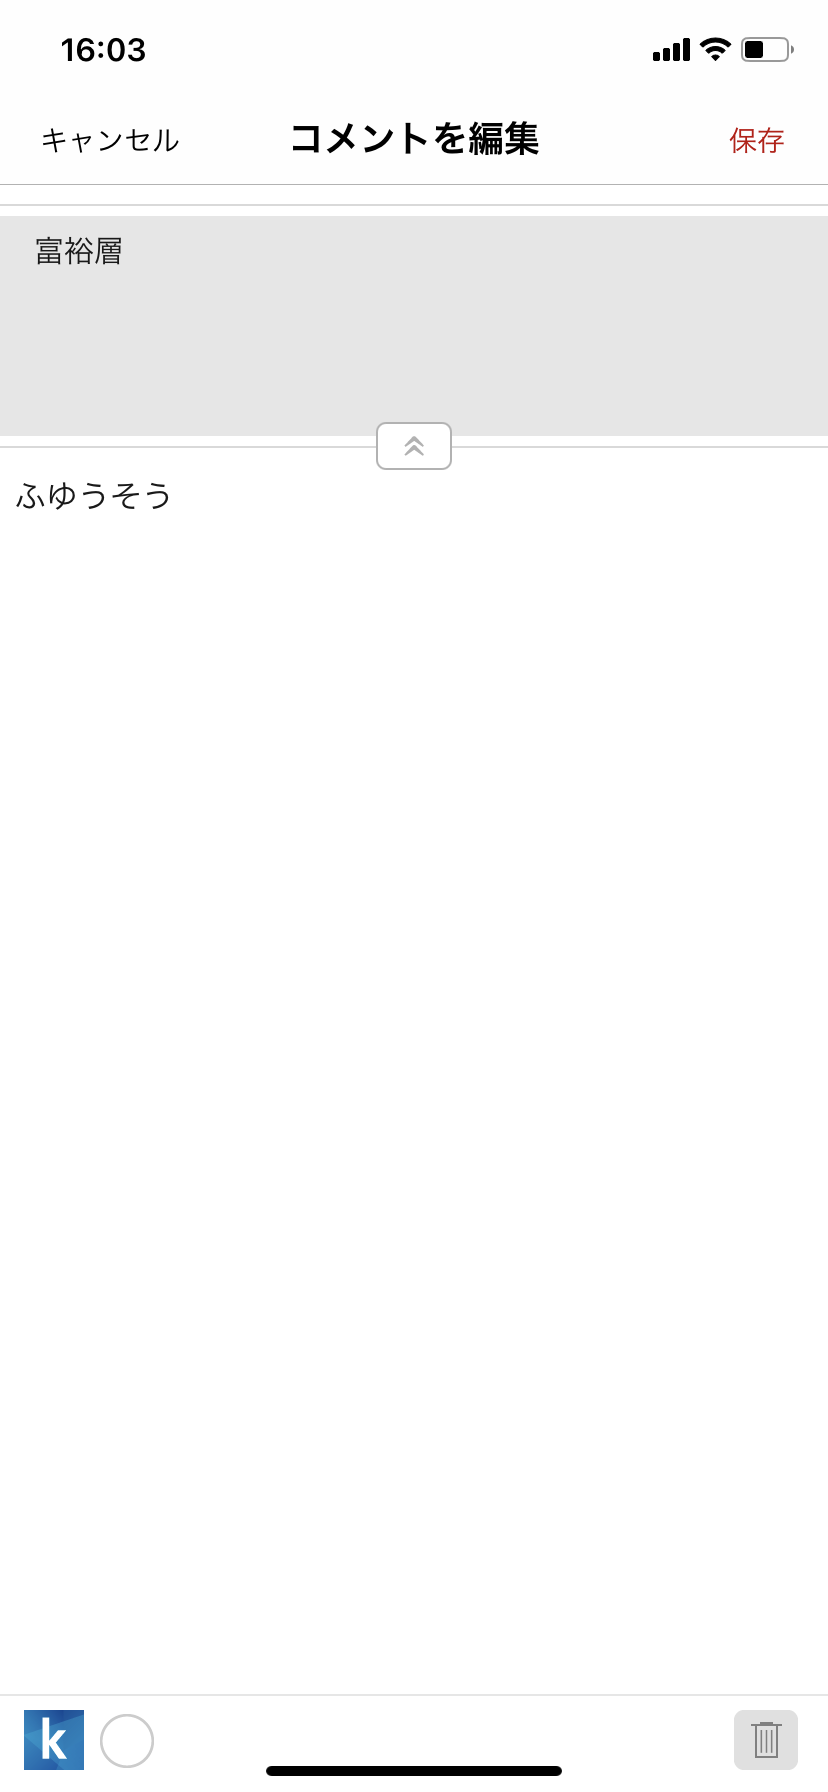 スマホ版楽天Koboアプリハイライト設定画面3